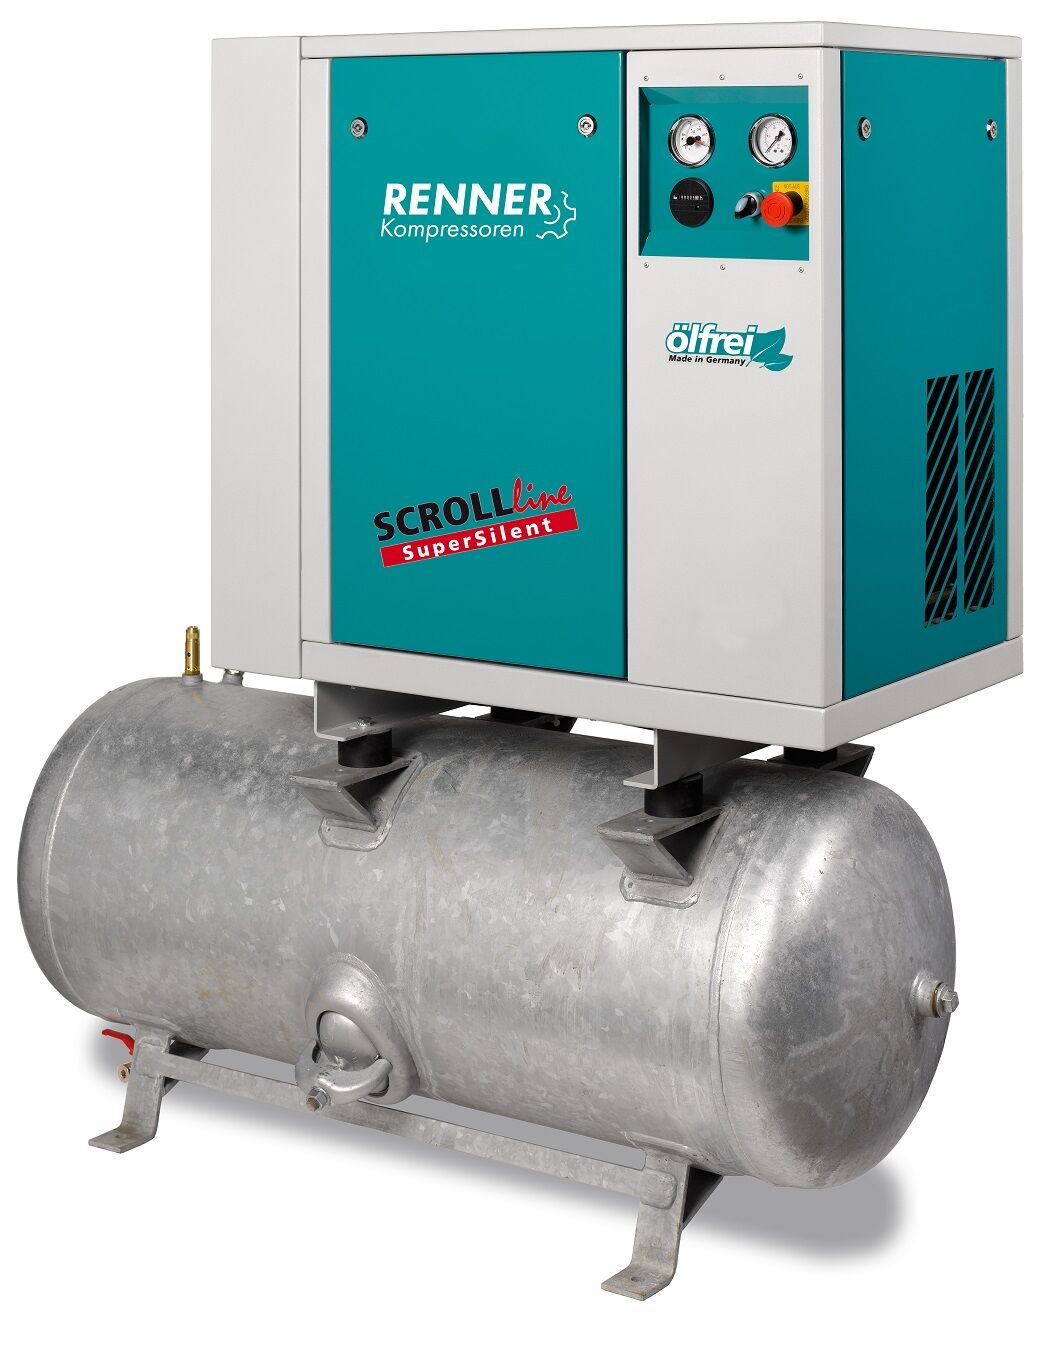 RENNER-Kompressor SLD-S 3,7 auf 250 Liter Druckbehälter- SuperSilent  ölfreier Scrollkompressor